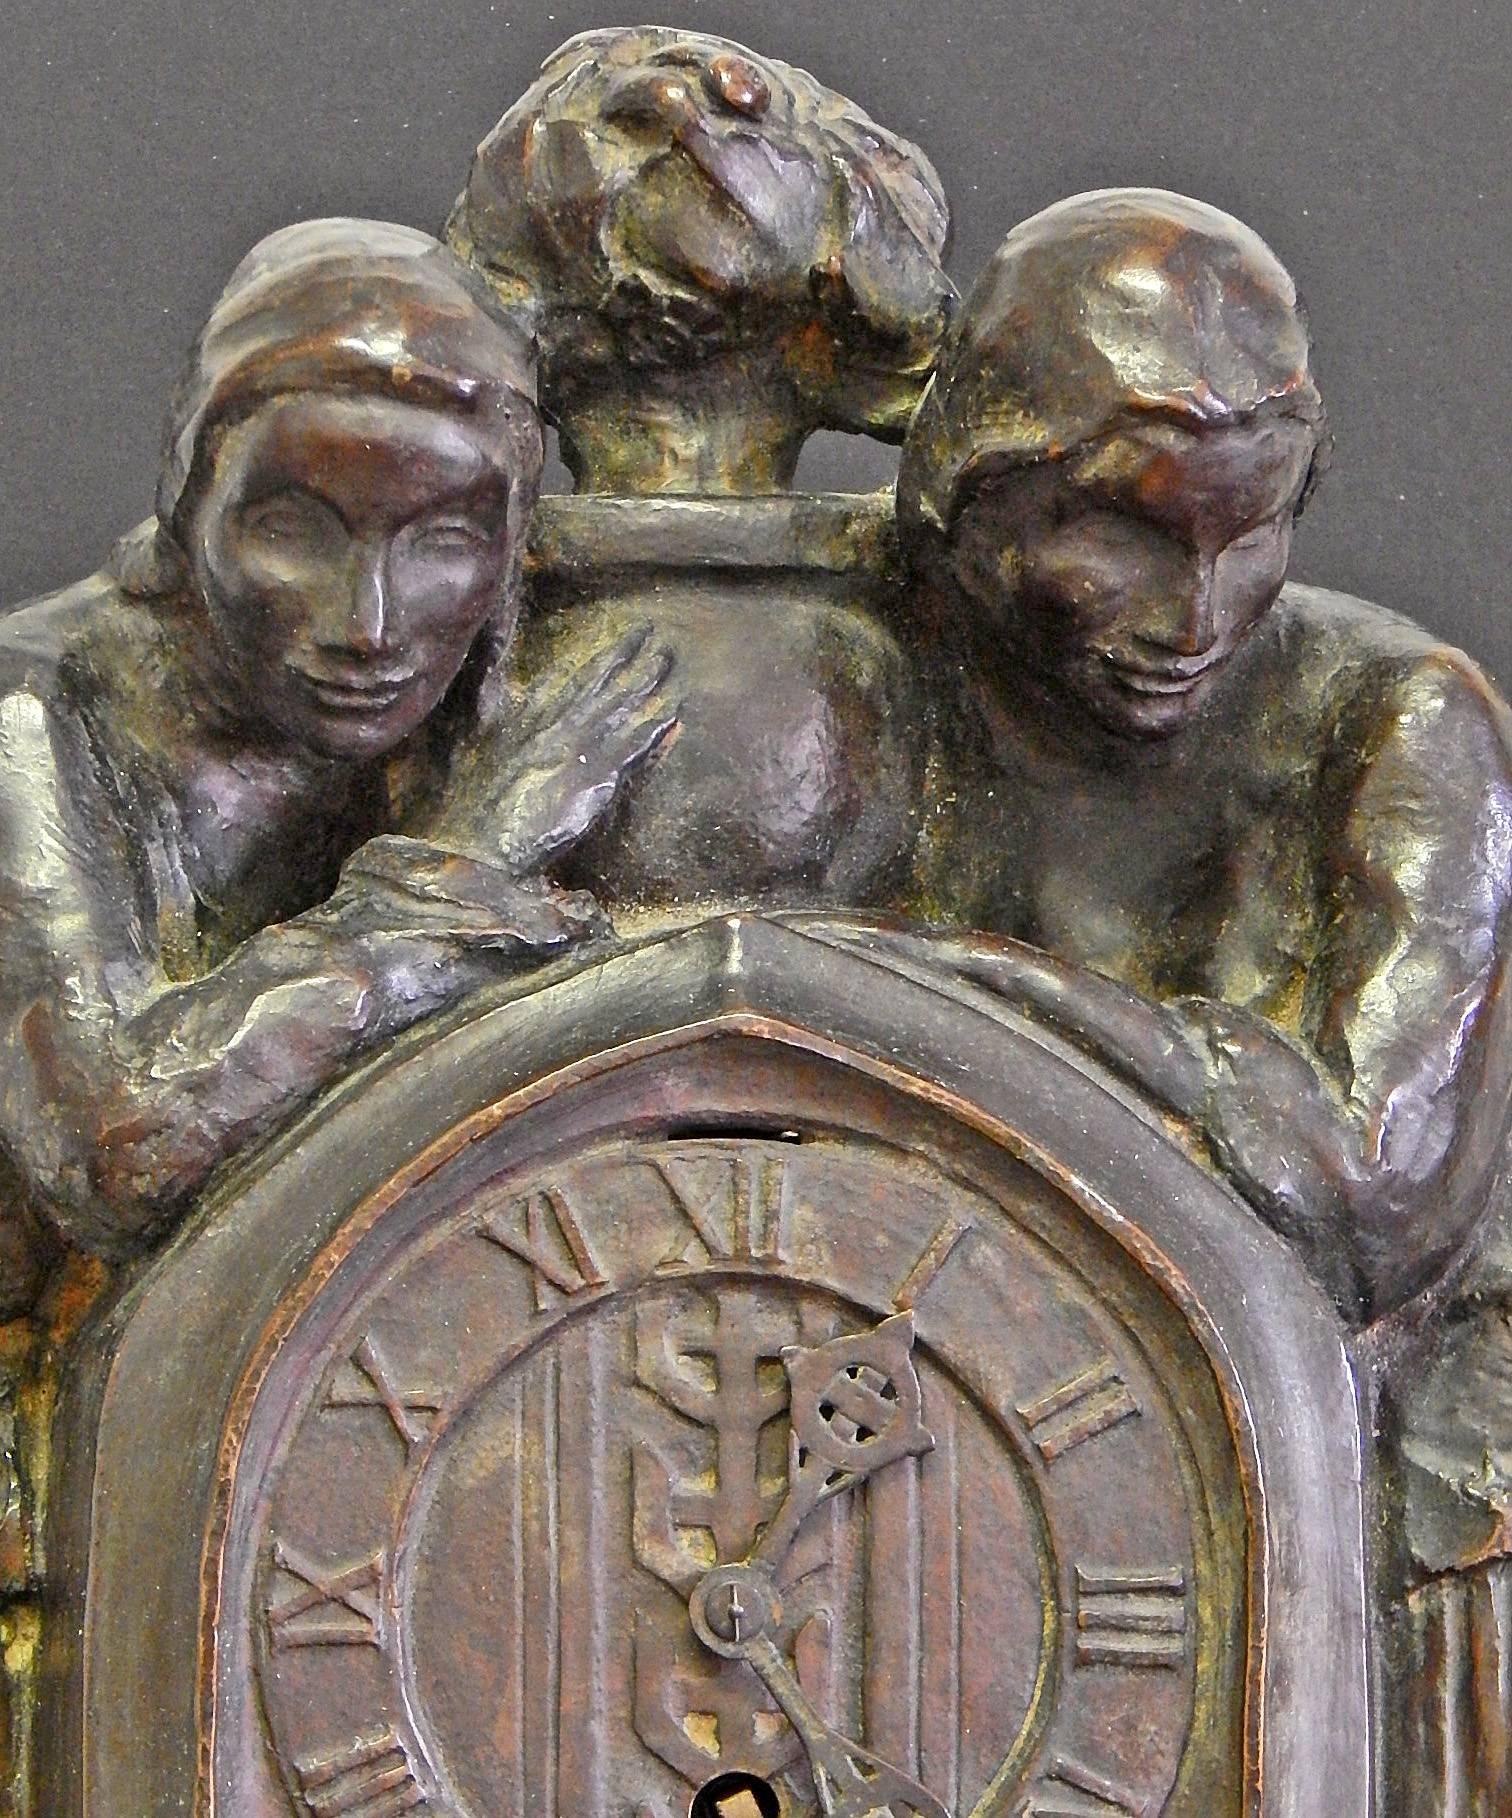 Dieser äußerst seltene, wenn nicht gar einzigartige Zeitmesser ist möglicherweise die einzige Skulptur mit Uhr, die jemals von den Roman Bronze Works, Amerikas führender Bronzegießerei des frühen 20. Die Skulptur zeigt zwei weibliche Figuren in